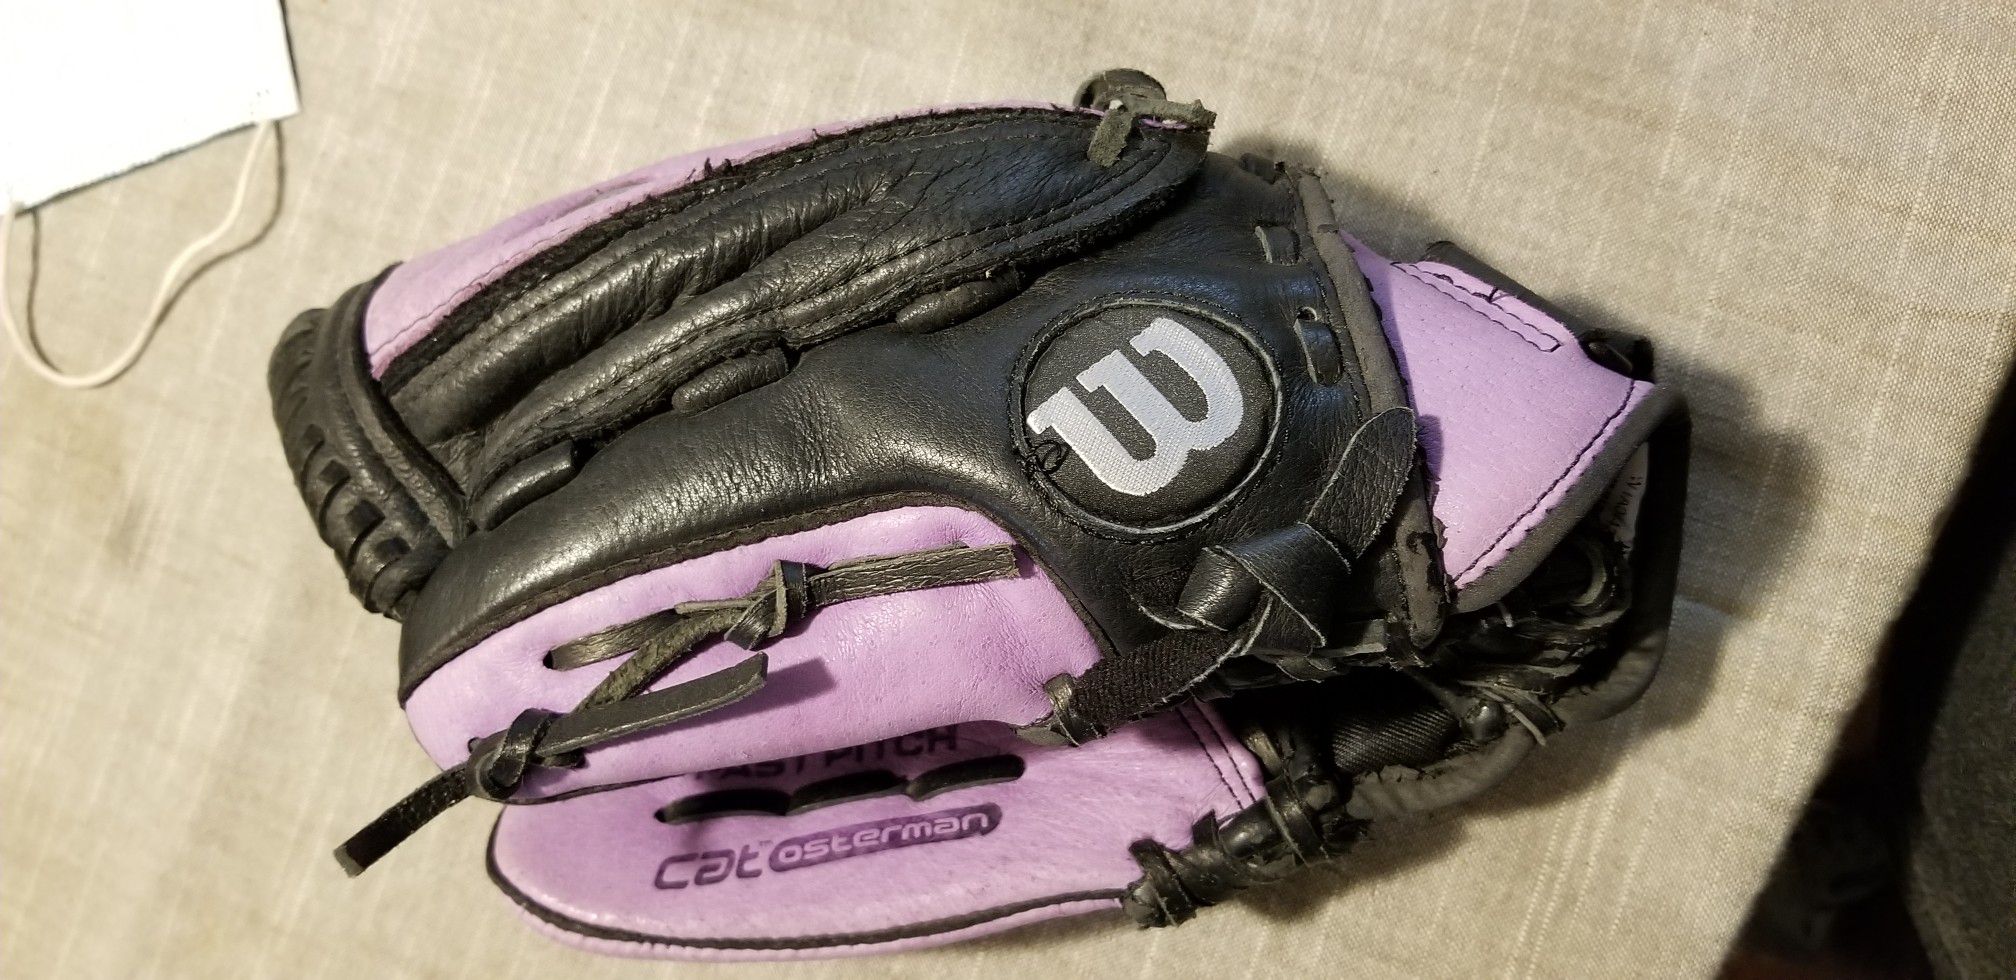 11.5" Wilson Lefty left baseball glove